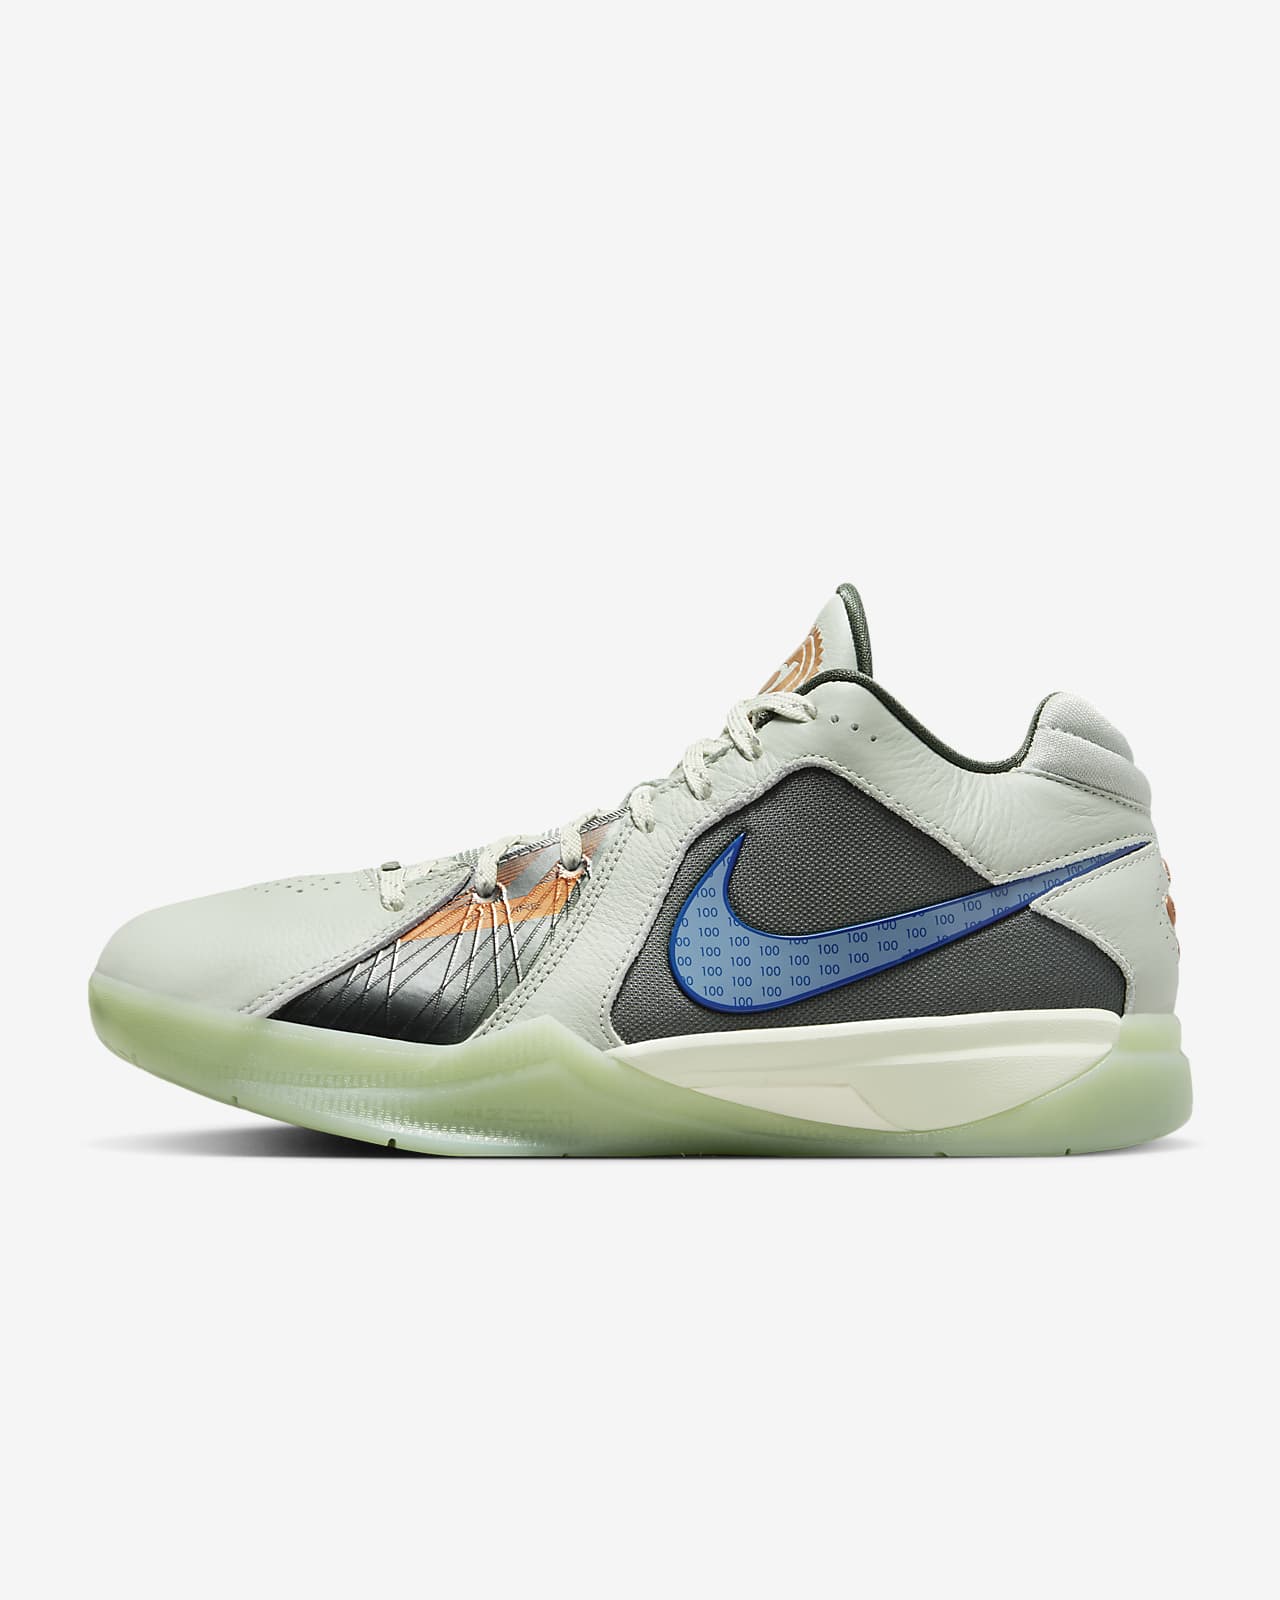 .Nike Zoom KD III 男子篮球鞋 ¥999